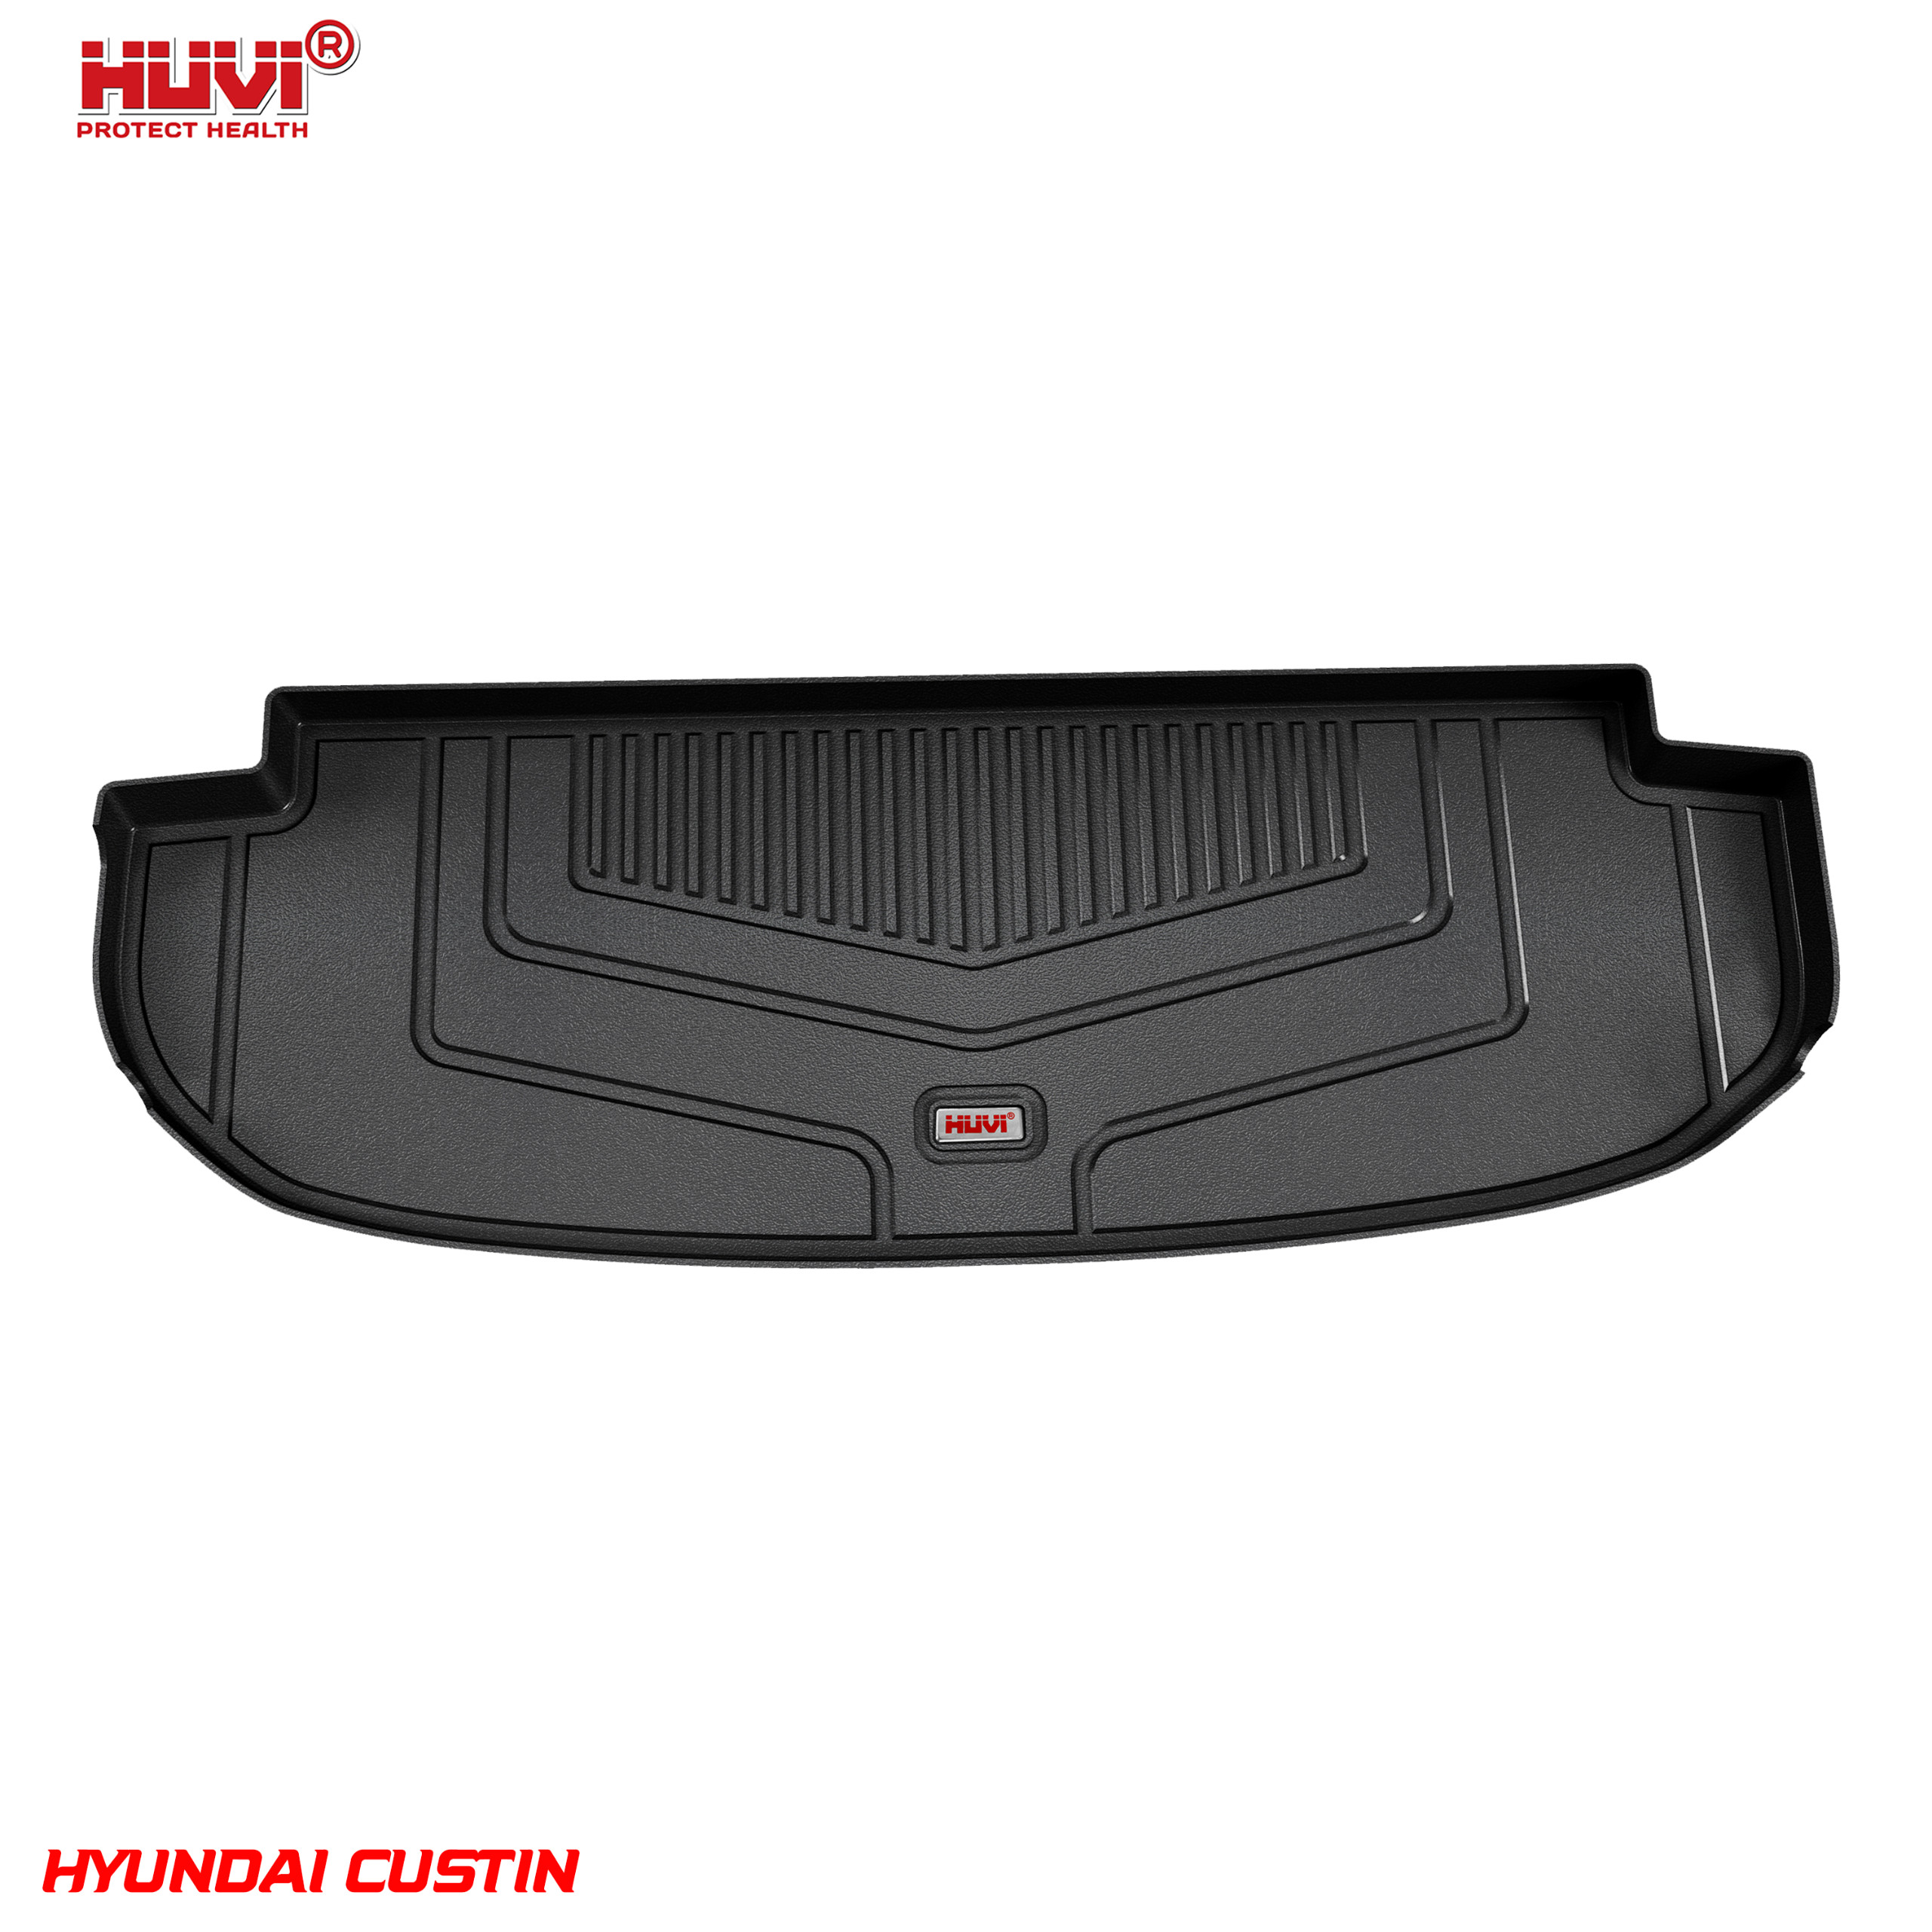 Thảm lót cốp ô tô Hyundai Custin bảo hành 2 năm.